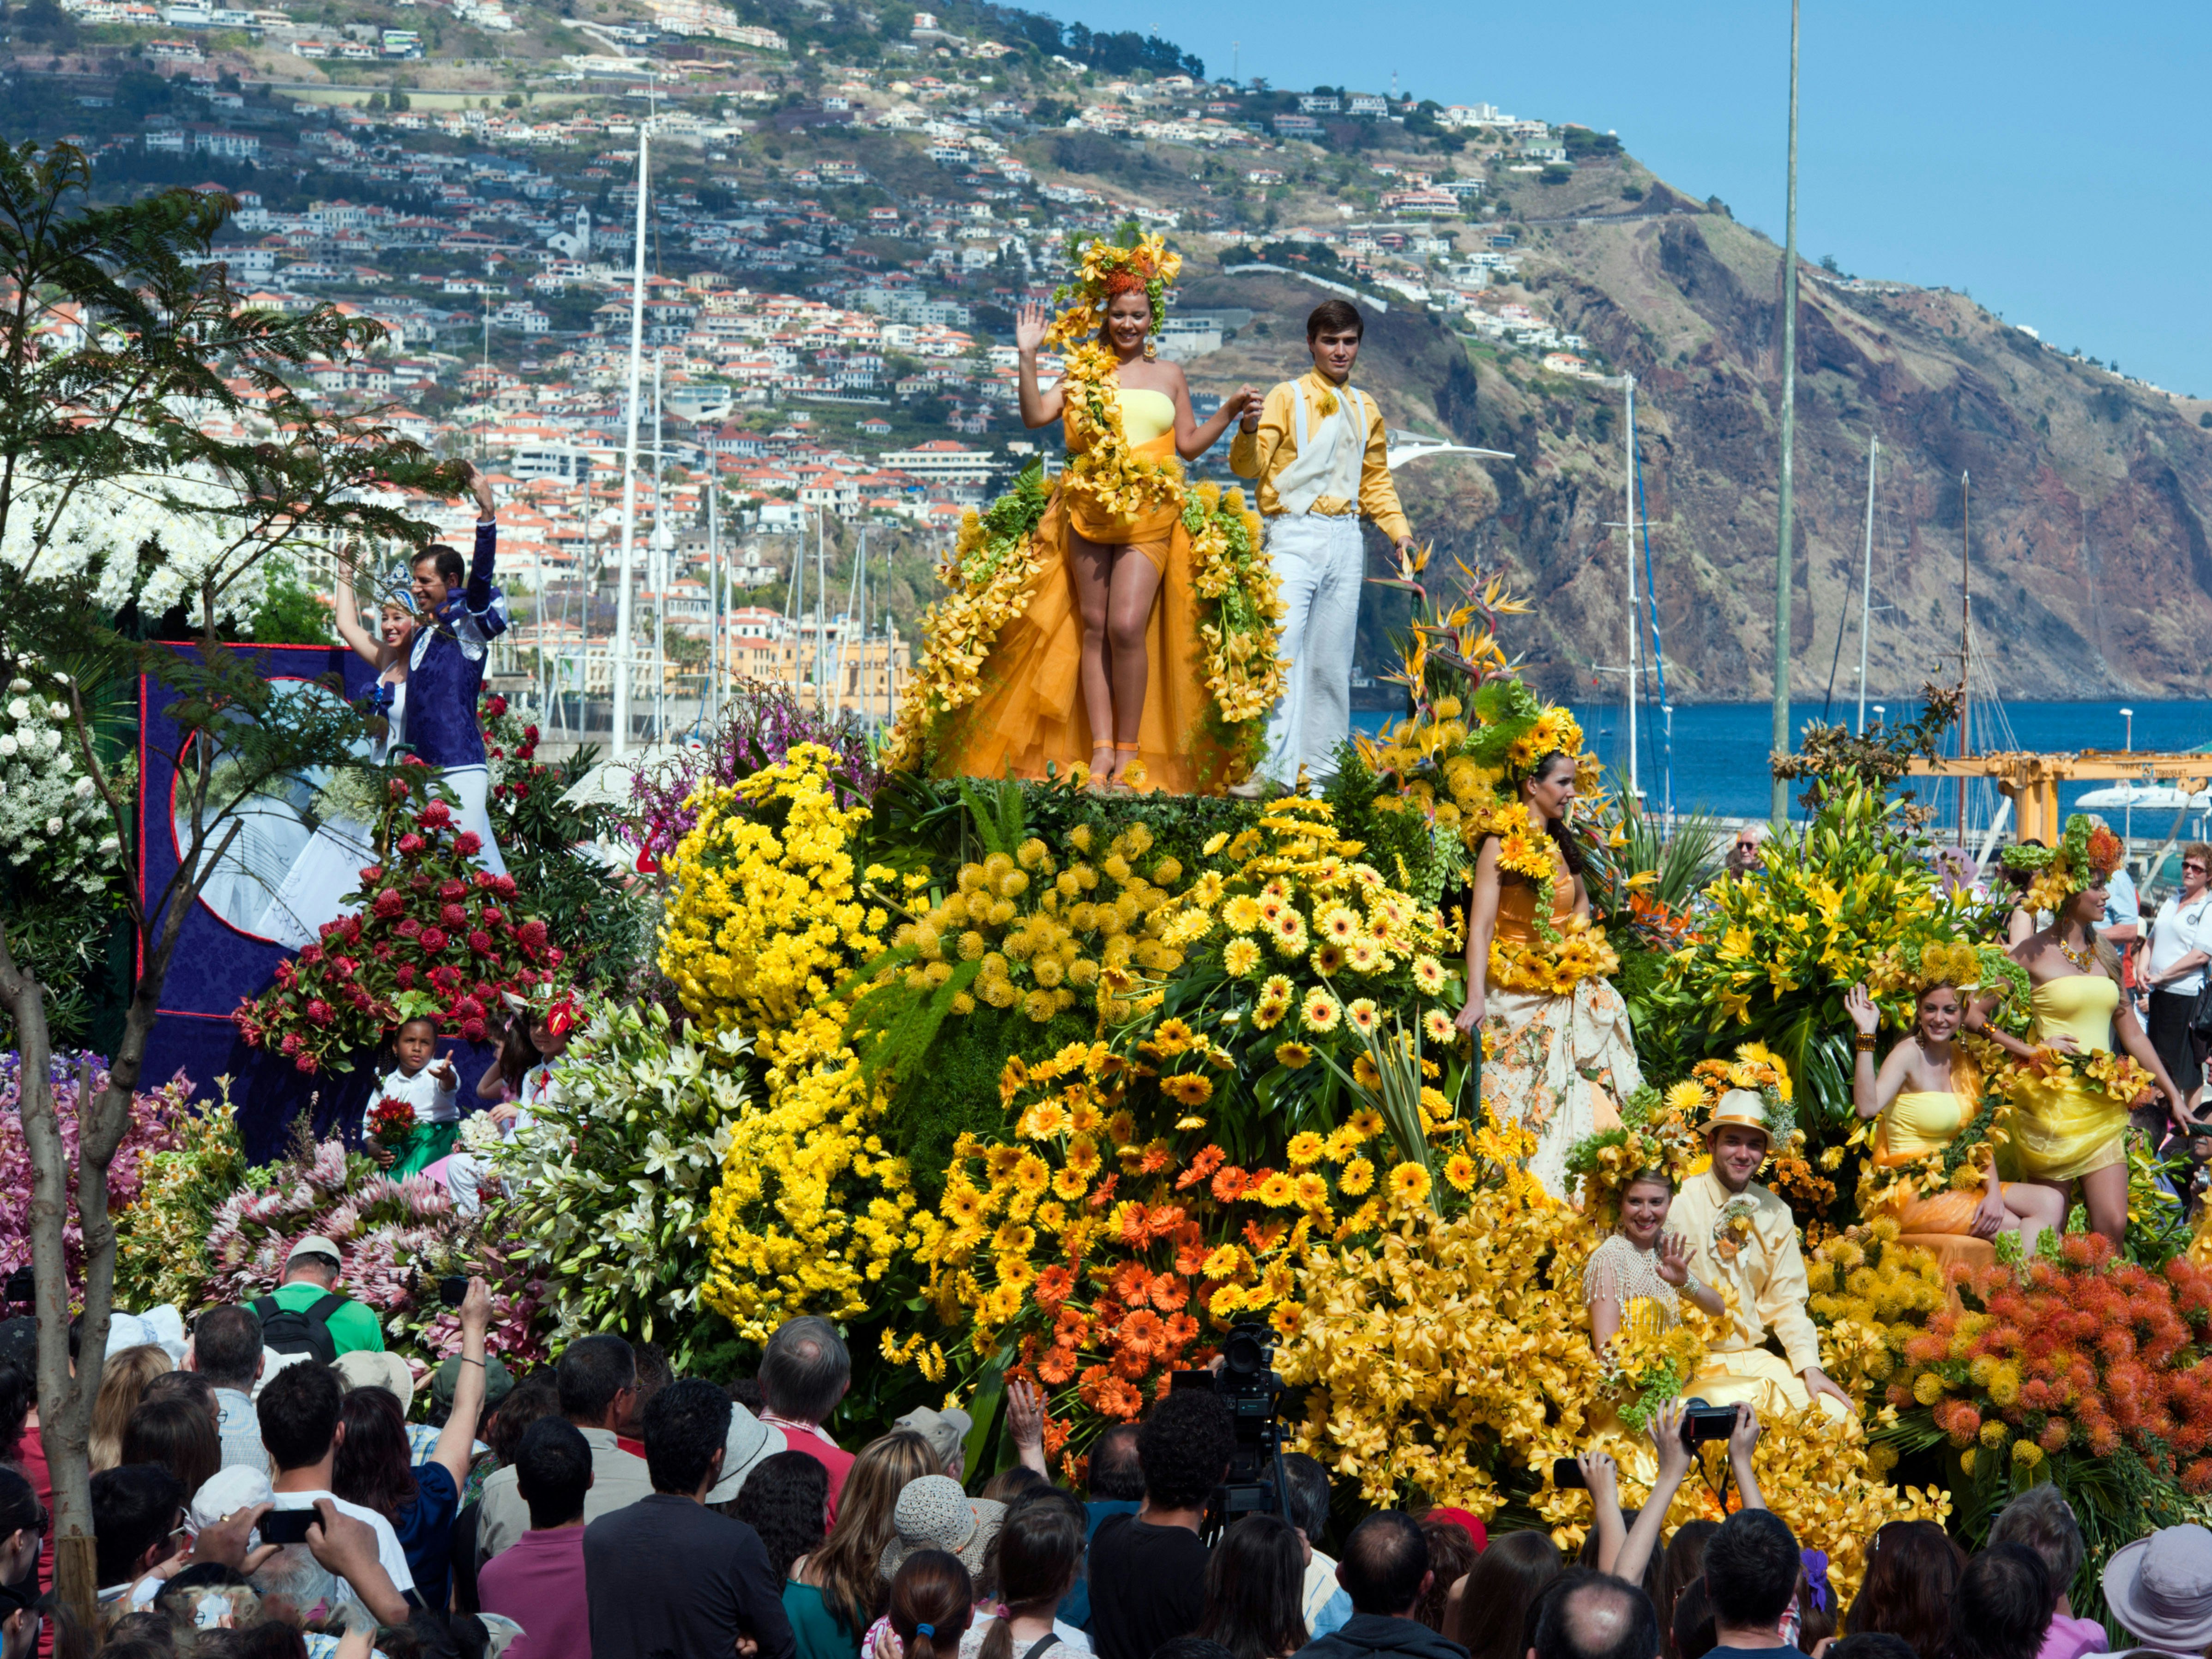 Blomsterfestival på Madeira. 